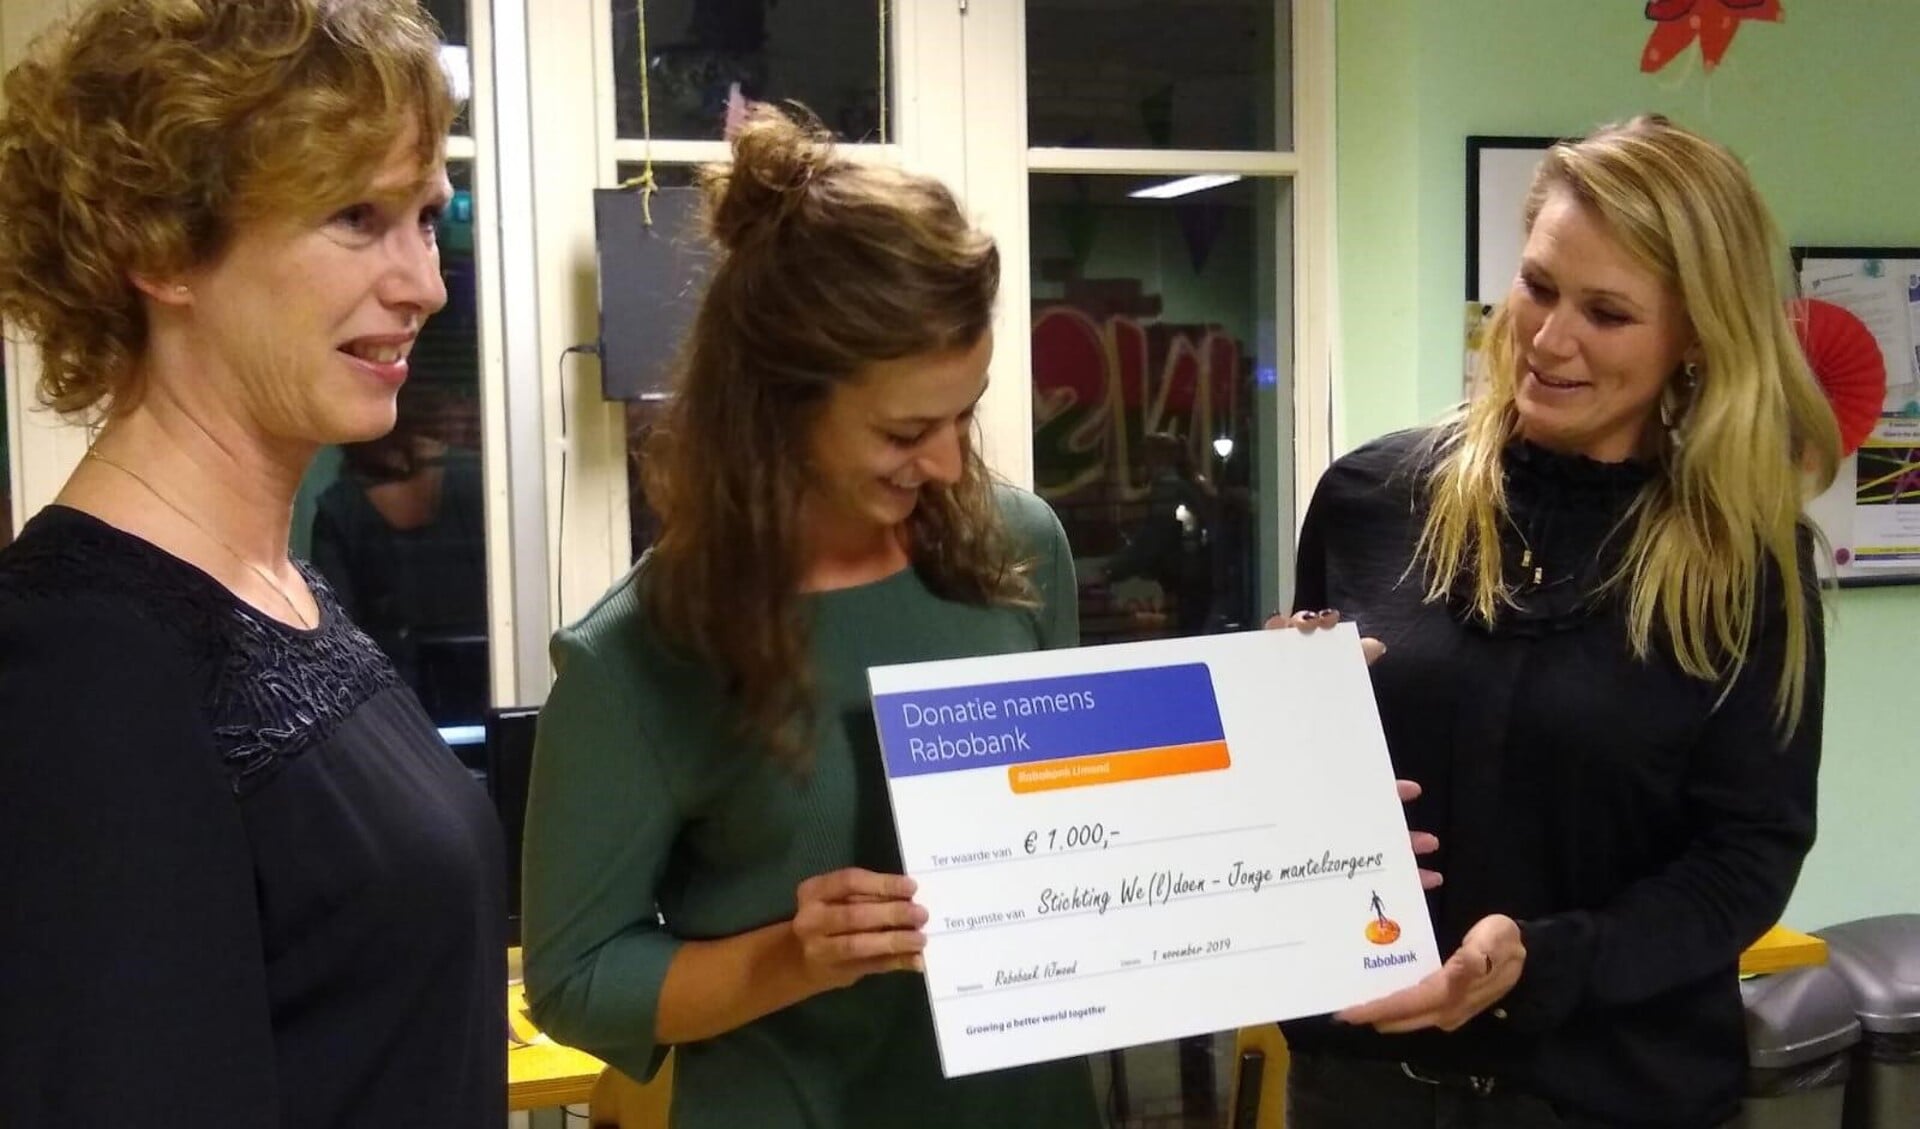 De cheque werd ontvangen door de jongerenwerkers Rianne Tol en Linda de Jong.